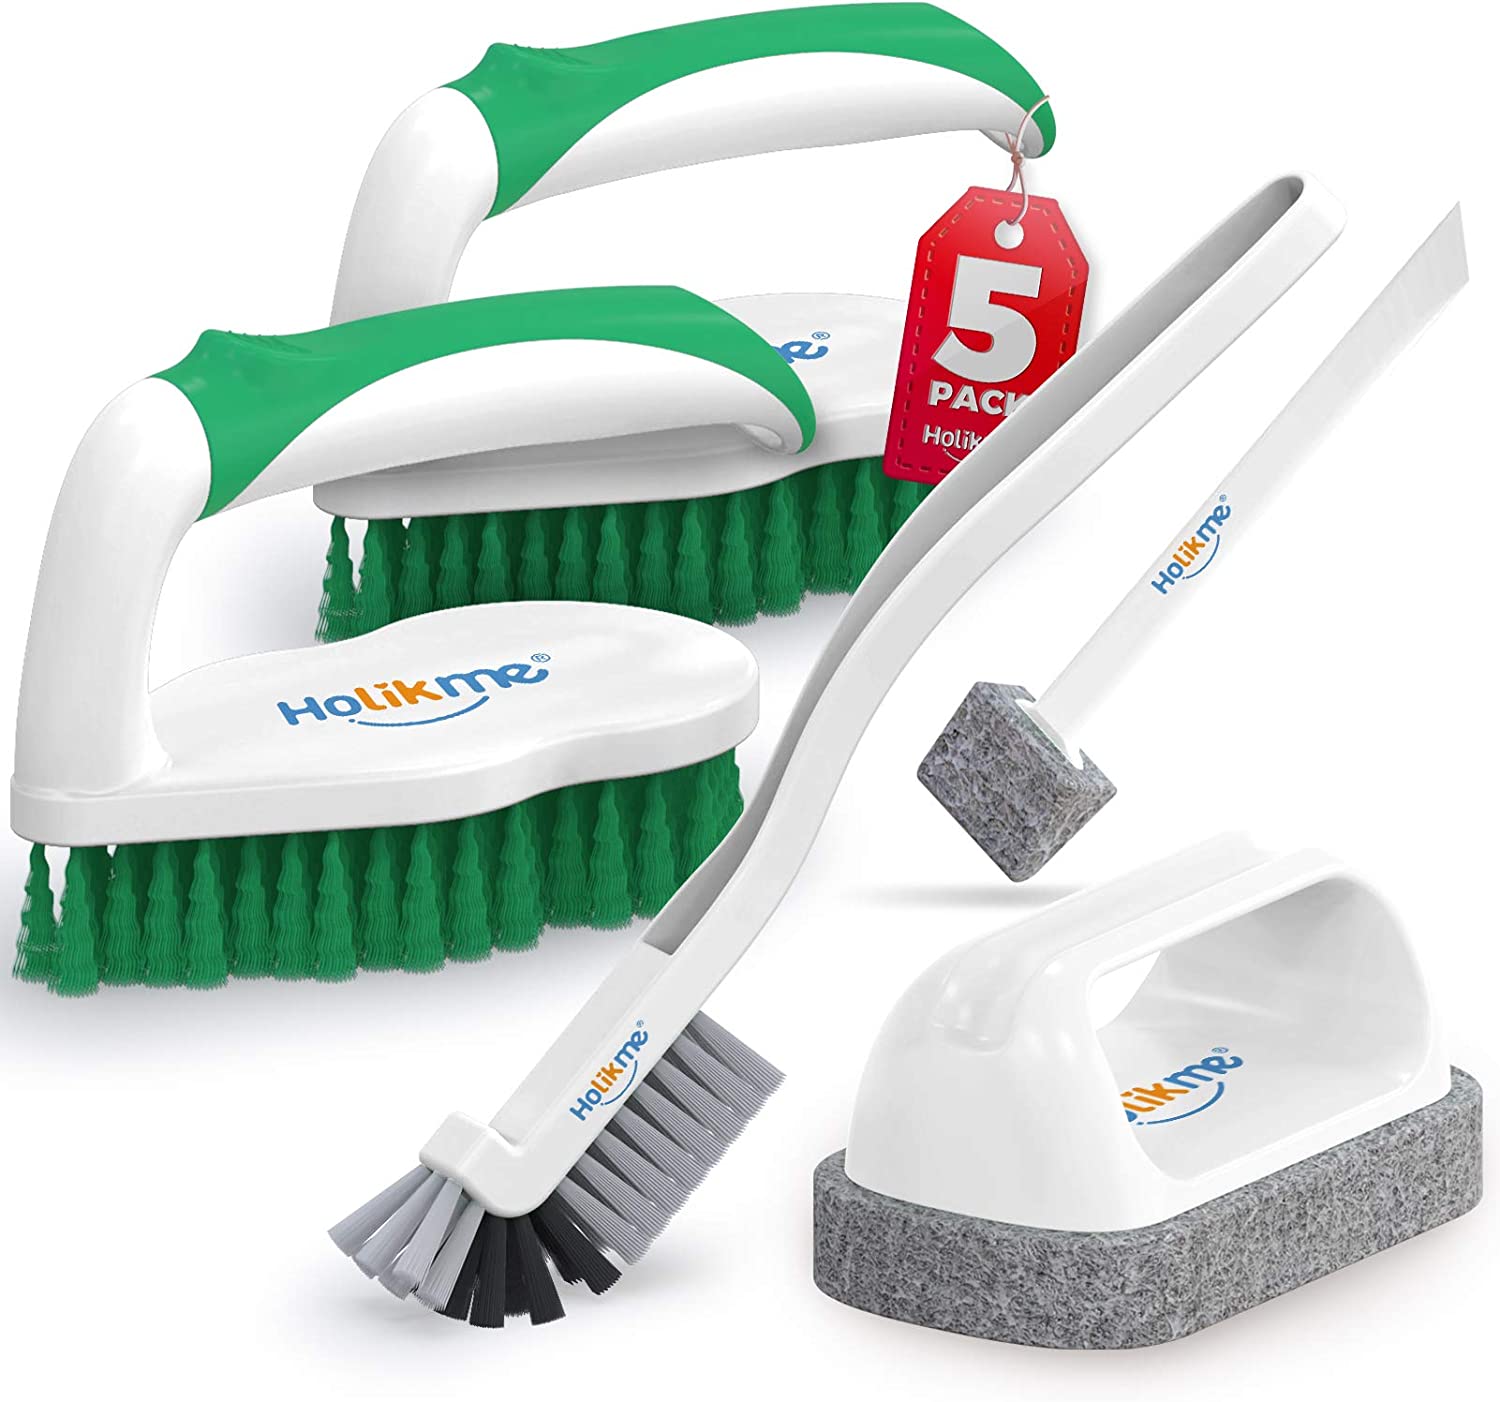 https://www.dontwasteyourmoney.com/wp-content/uploads/2022/10/holikme-decontamination-ergonomic-cleaning-brushes-5-pack-cleaning-brush.jpg